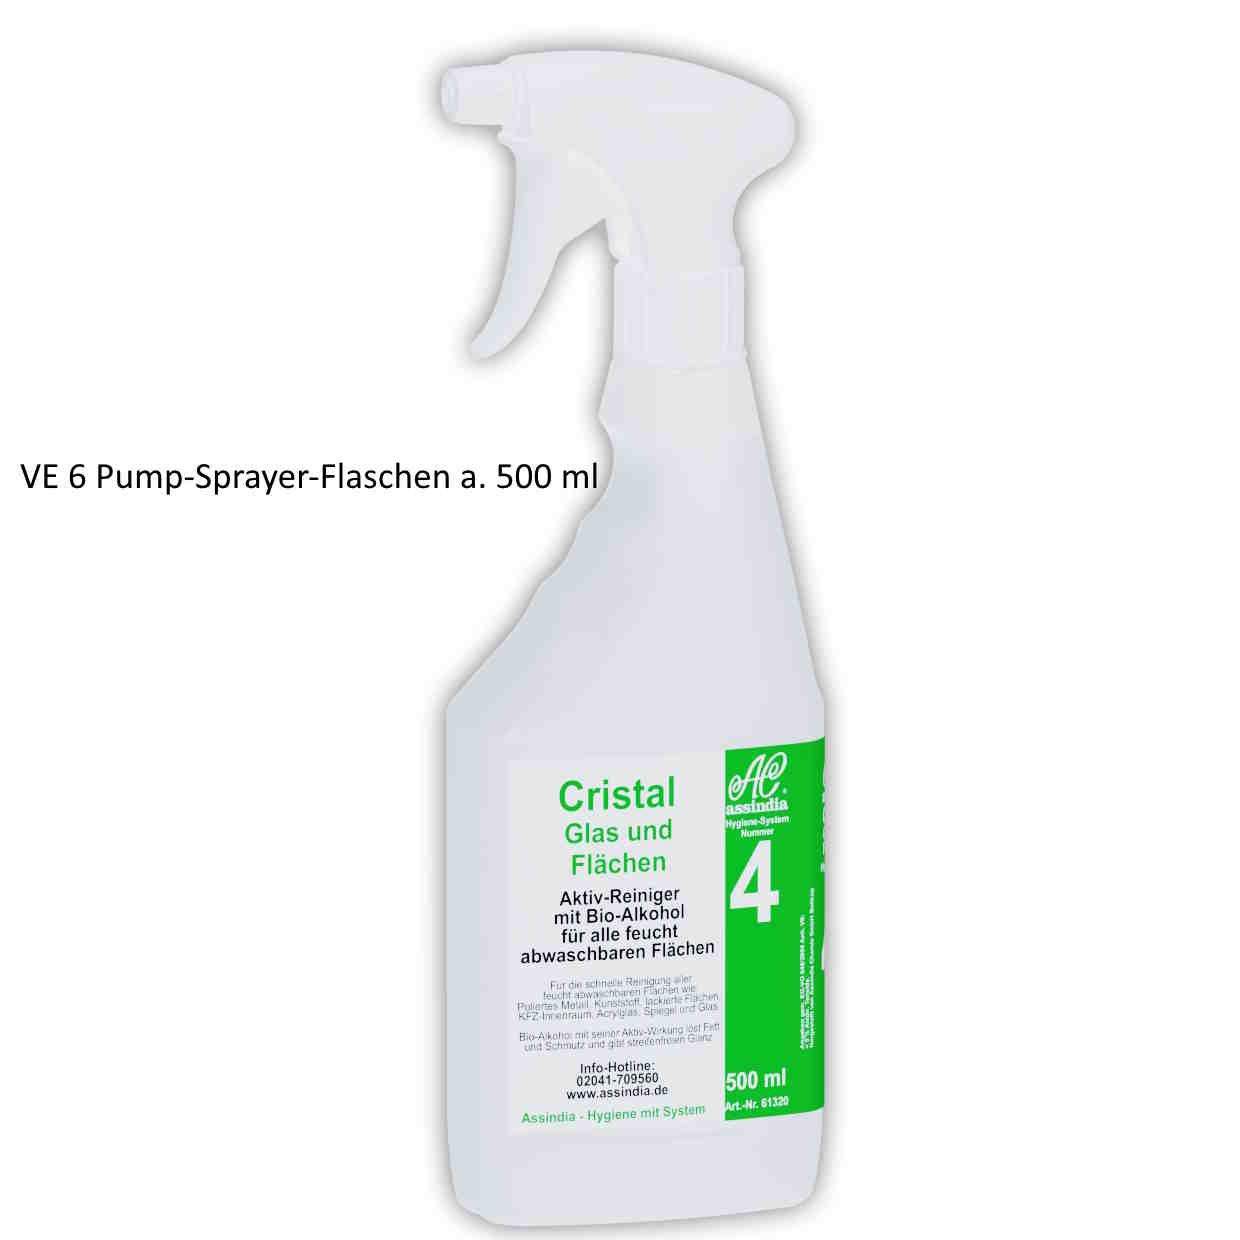 Cristal Glas und Flächen Reiniger Pump-Sprayer-Flasche  | VE 6 x 500 ml